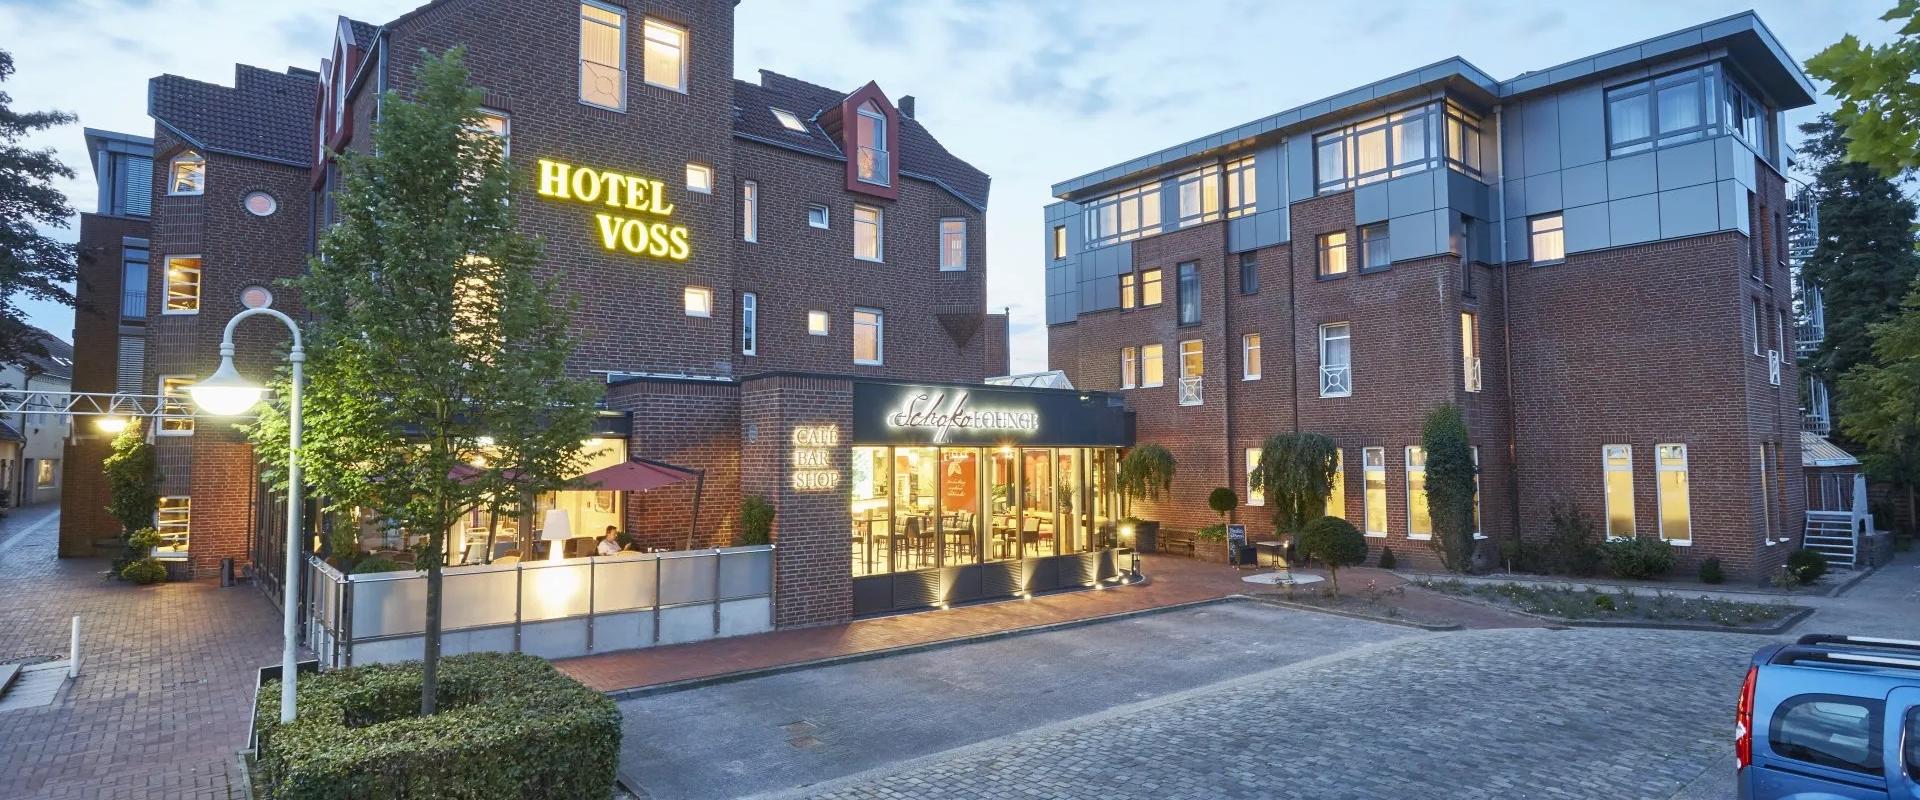 30869 Hotel Voss Ansicht.jpeg